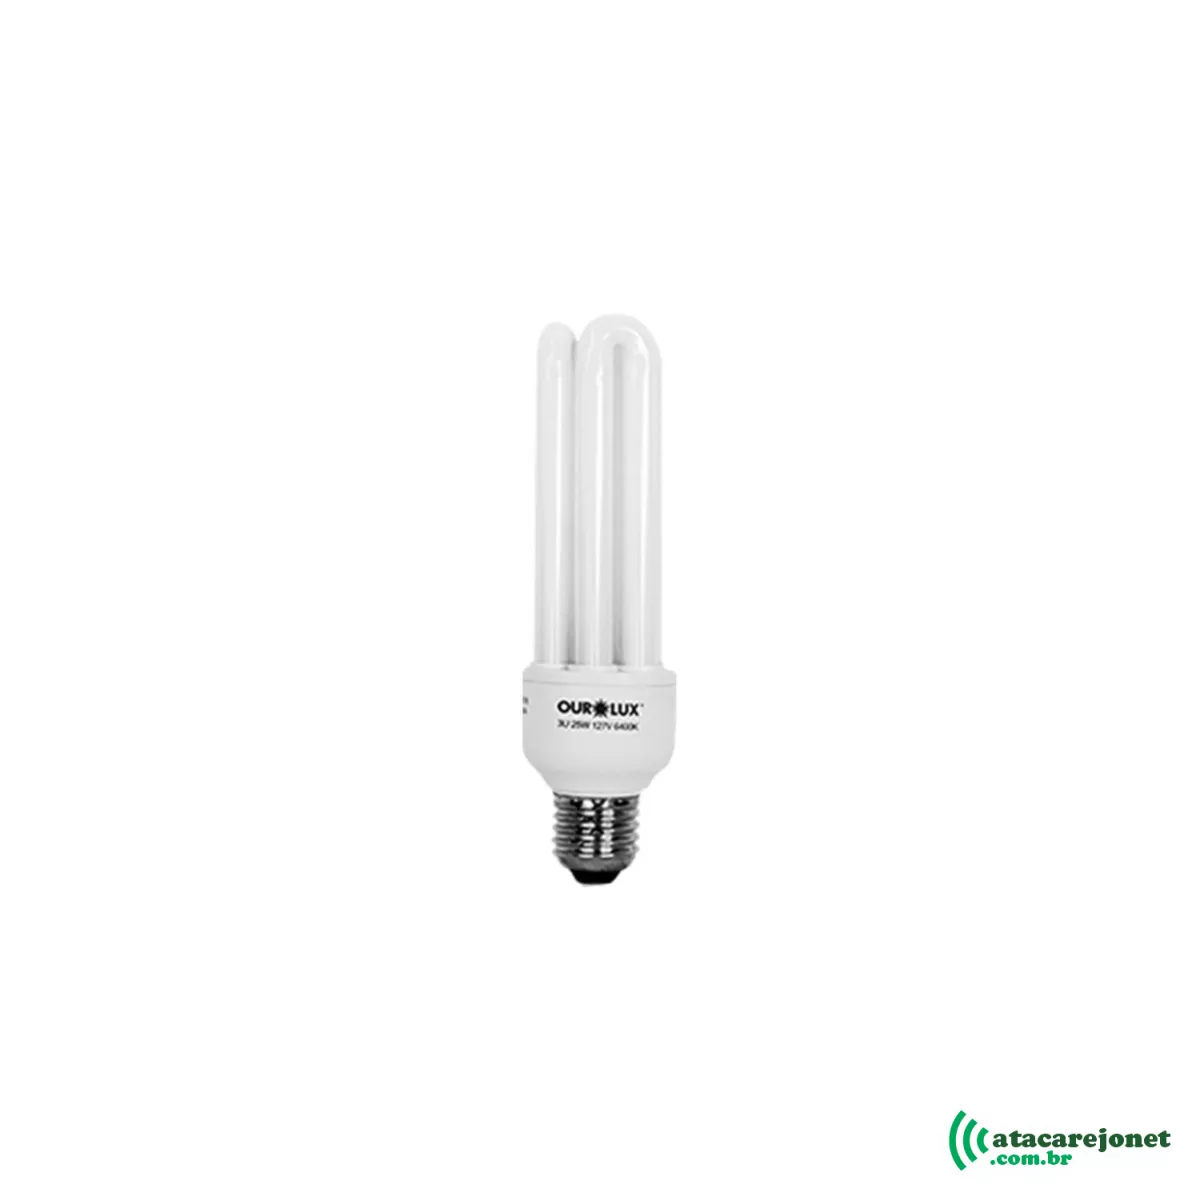 Lâmpada Eletrônica Simples Luz Branca 220V x 9W - Ourolux